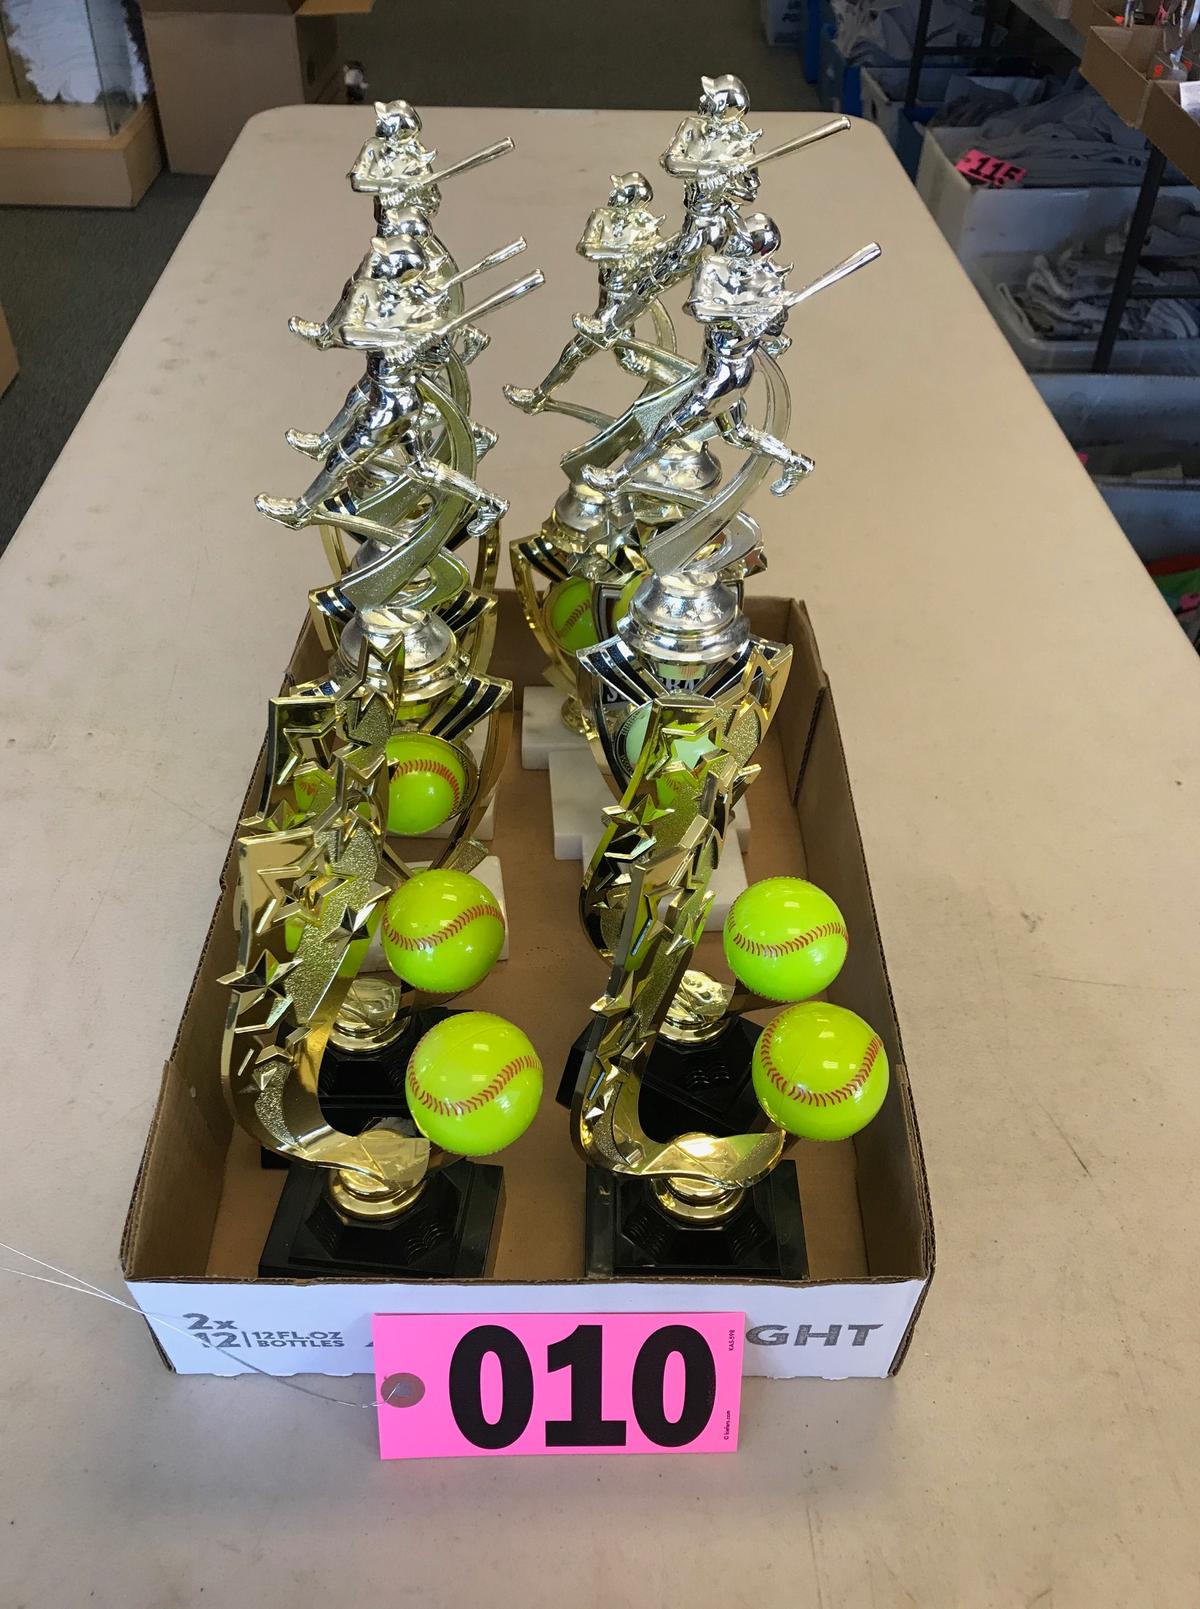 Assrtd. softball trophies